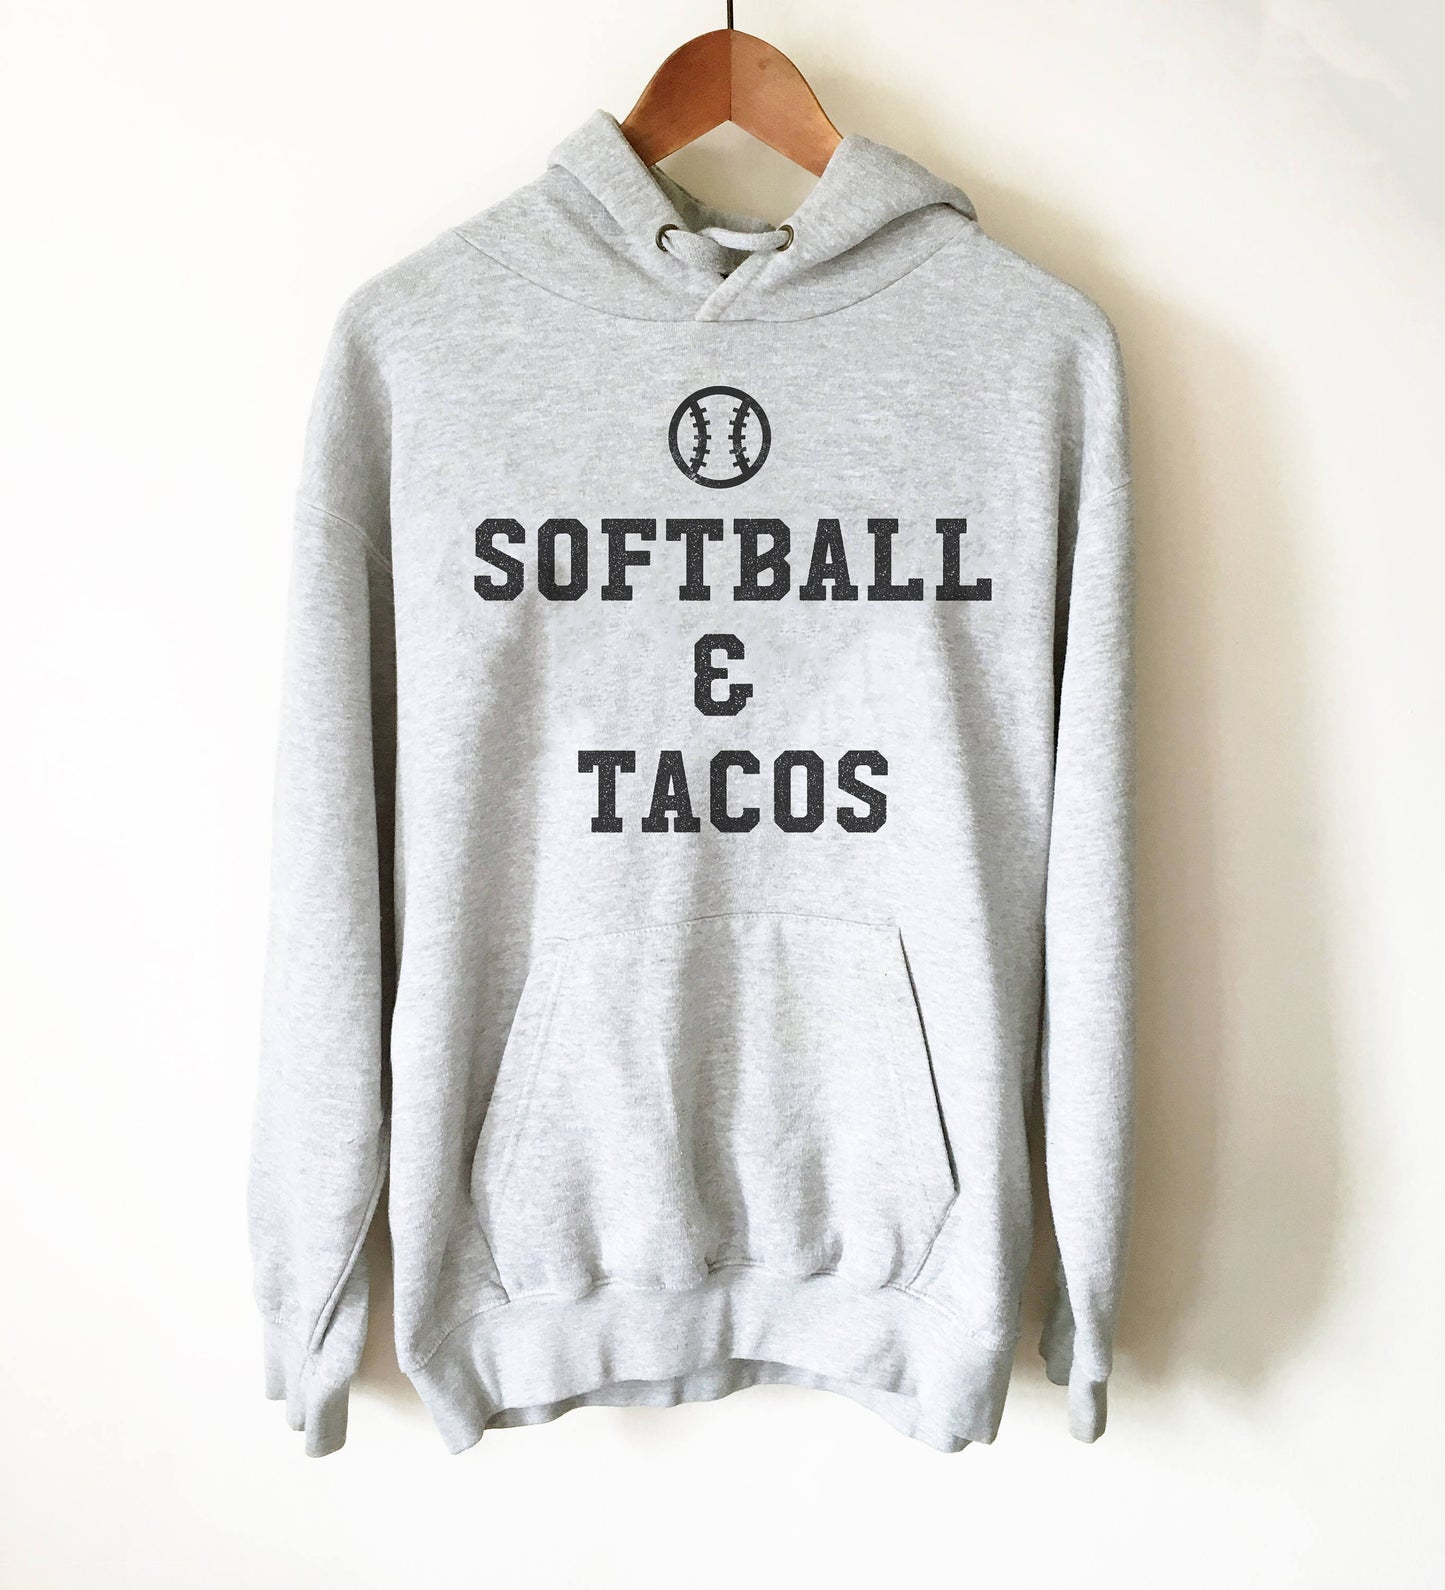 Softball And Tacos Hoodie- Softball Life Gifts, Softball Mom Shirt, Team Softball Gift, Softball Coach Shirt, Softball Dad Gifts